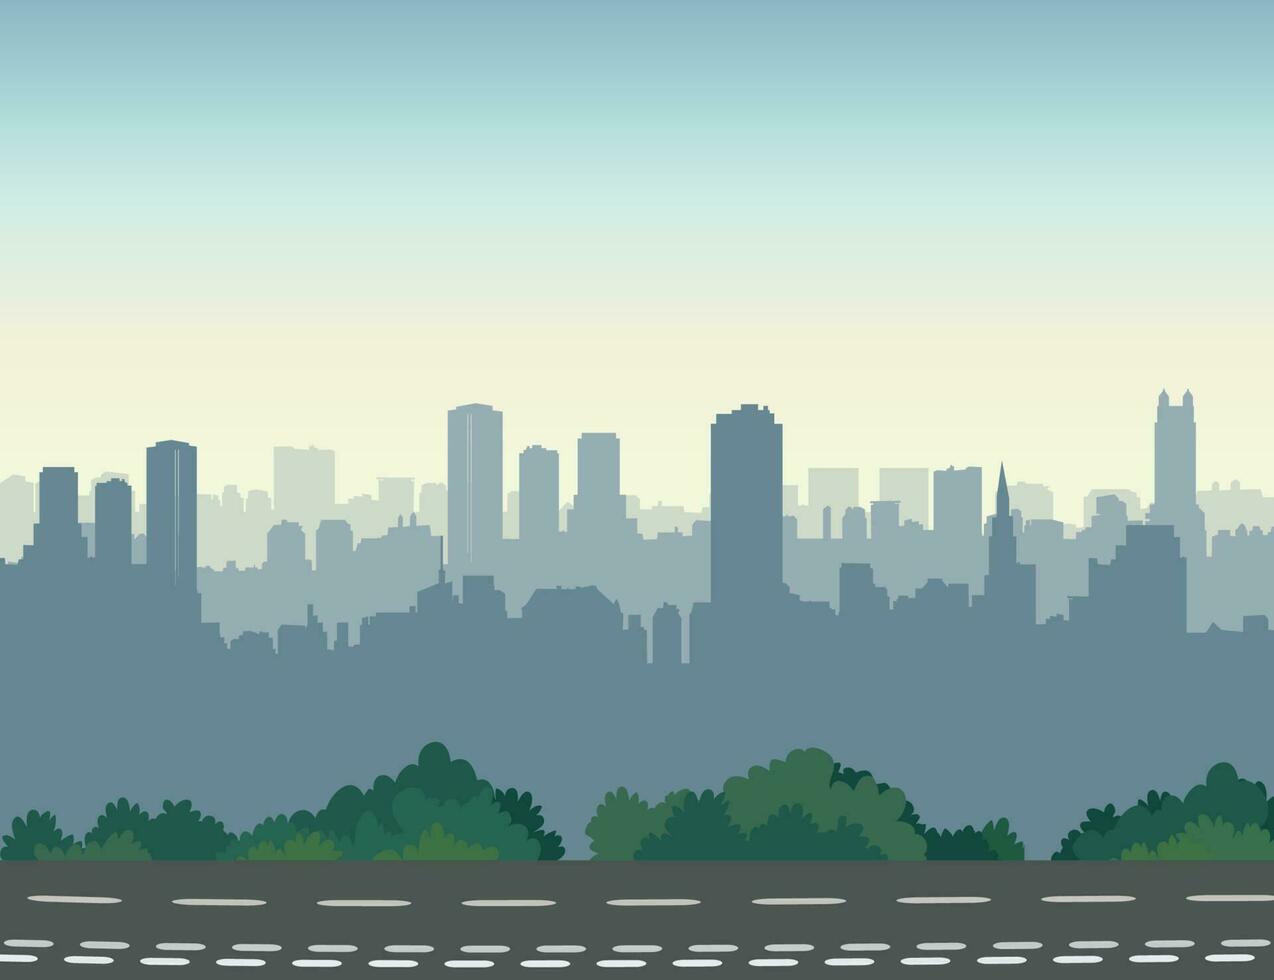 stad snelweg weg horizon. stedelijk landschap met weg en wolkenkrabbers visie. stadsgezicht silhouet vector